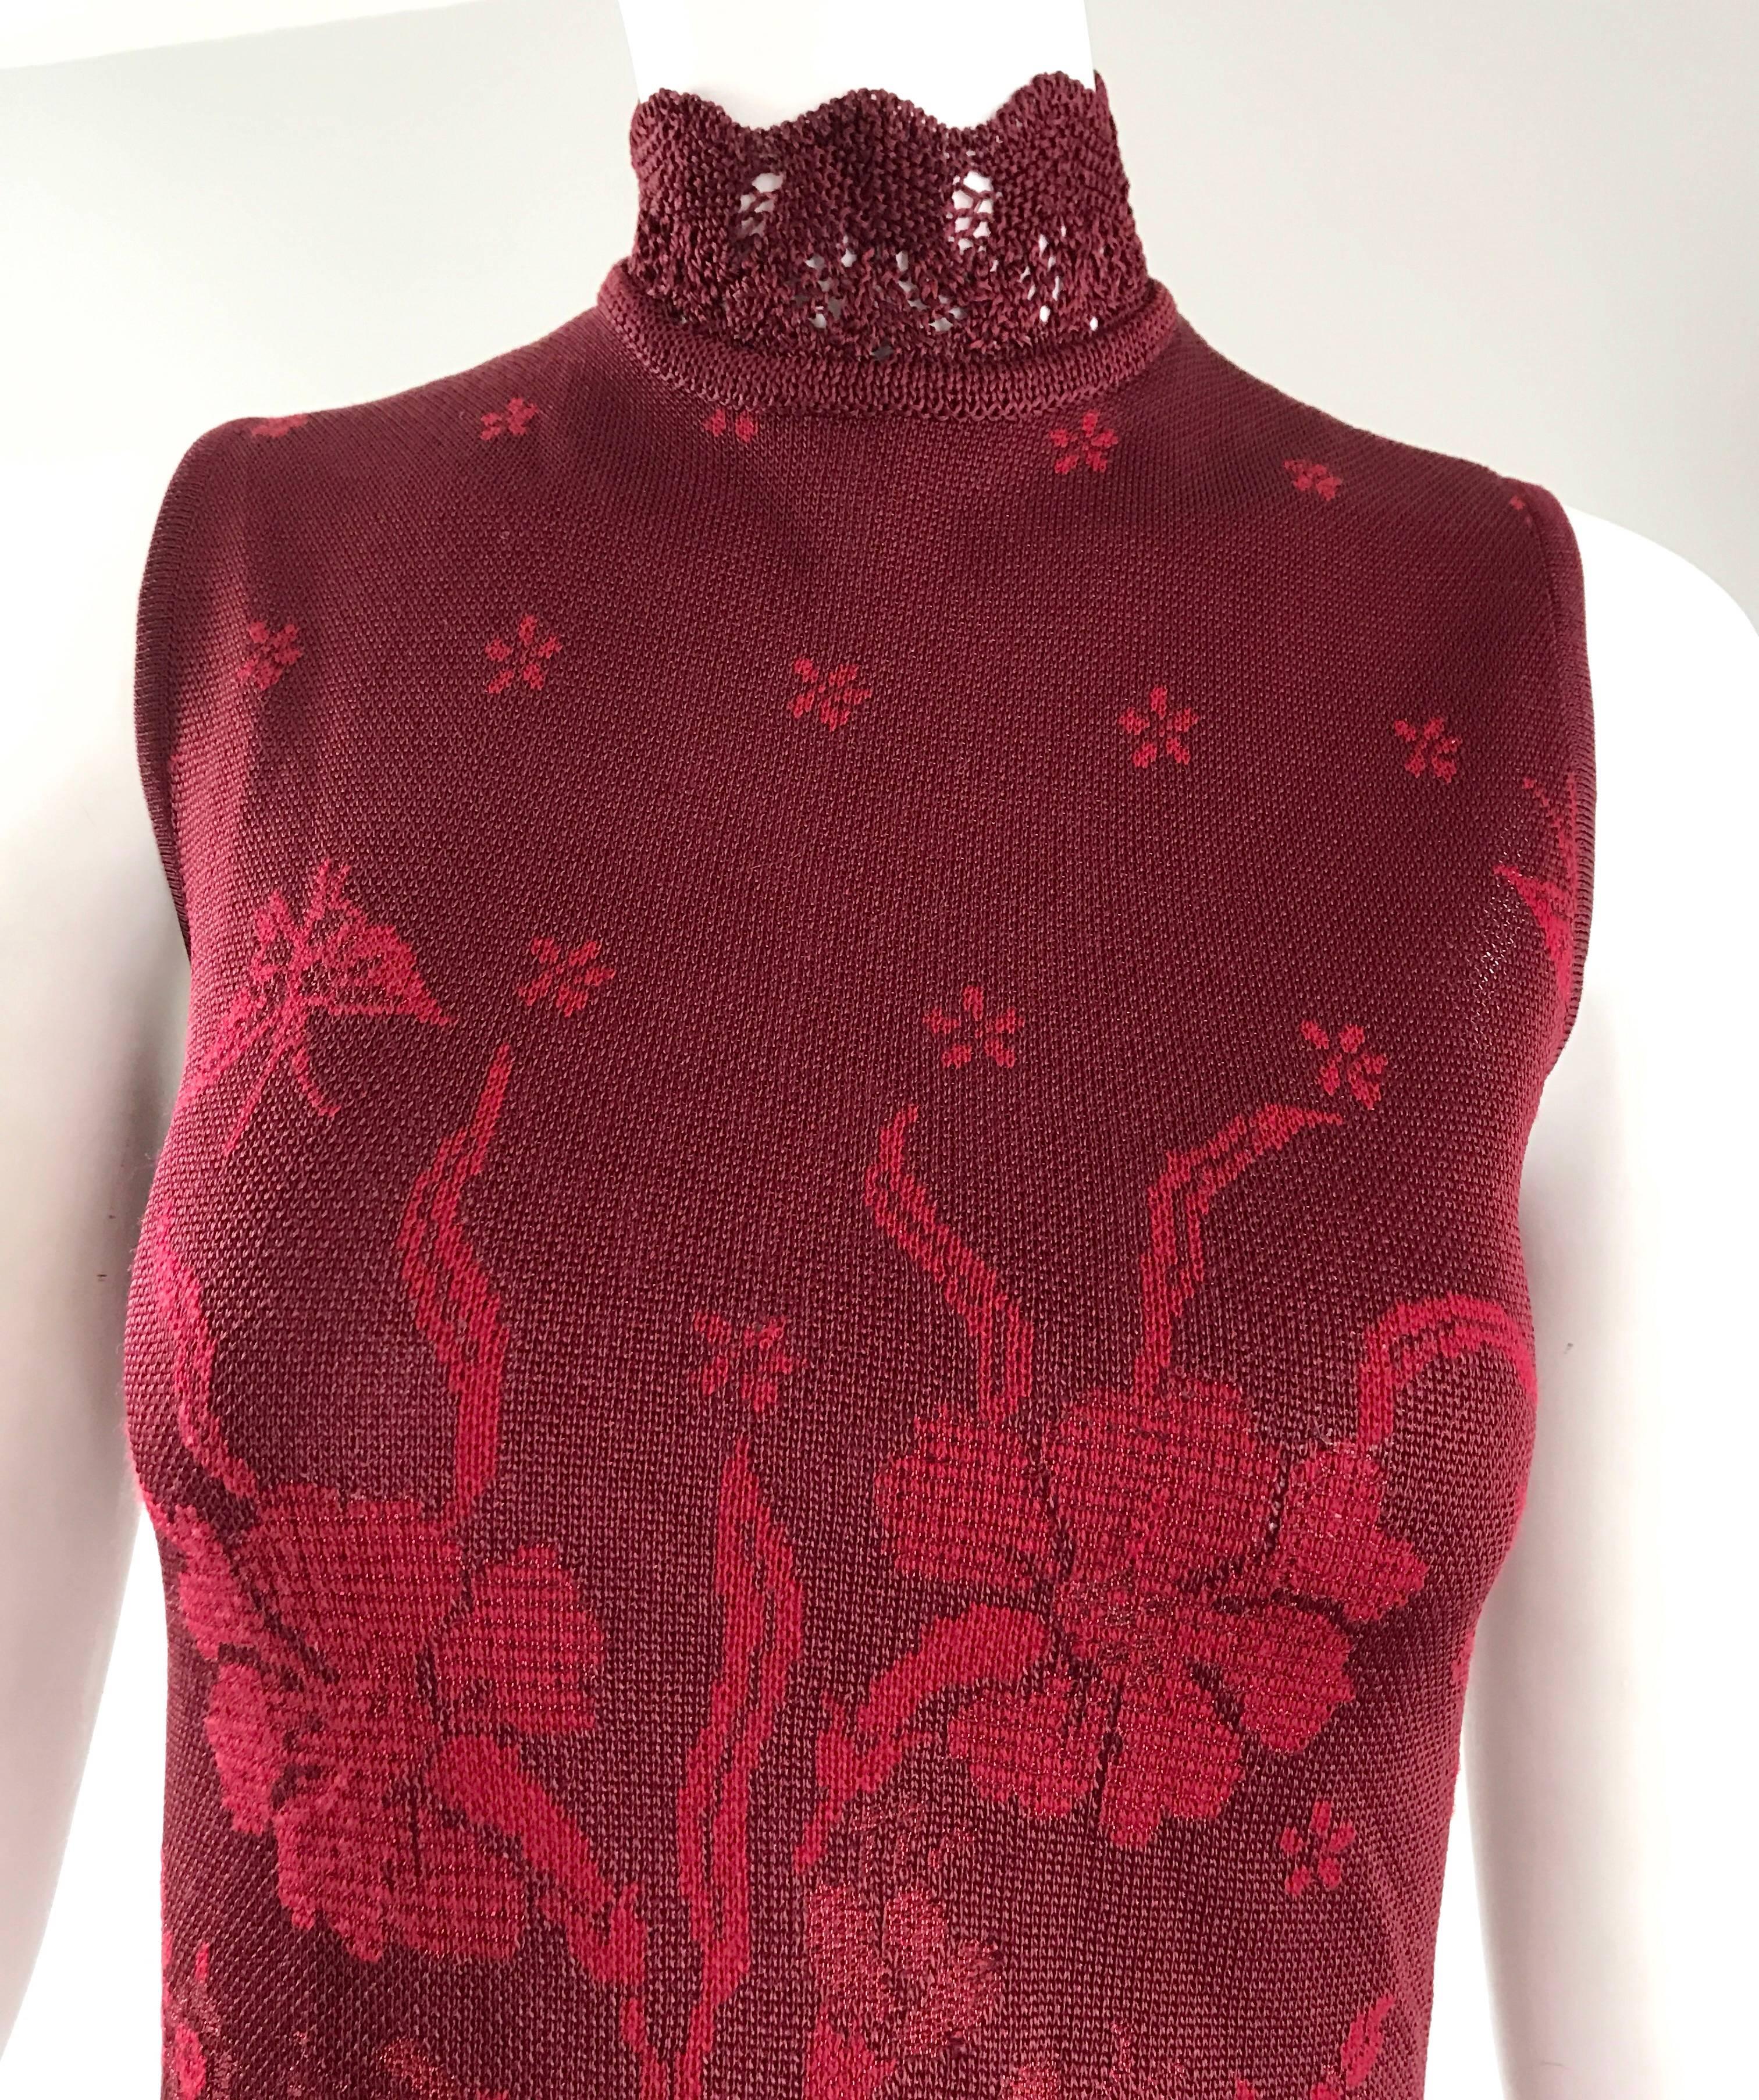 90's crochet butterfly top